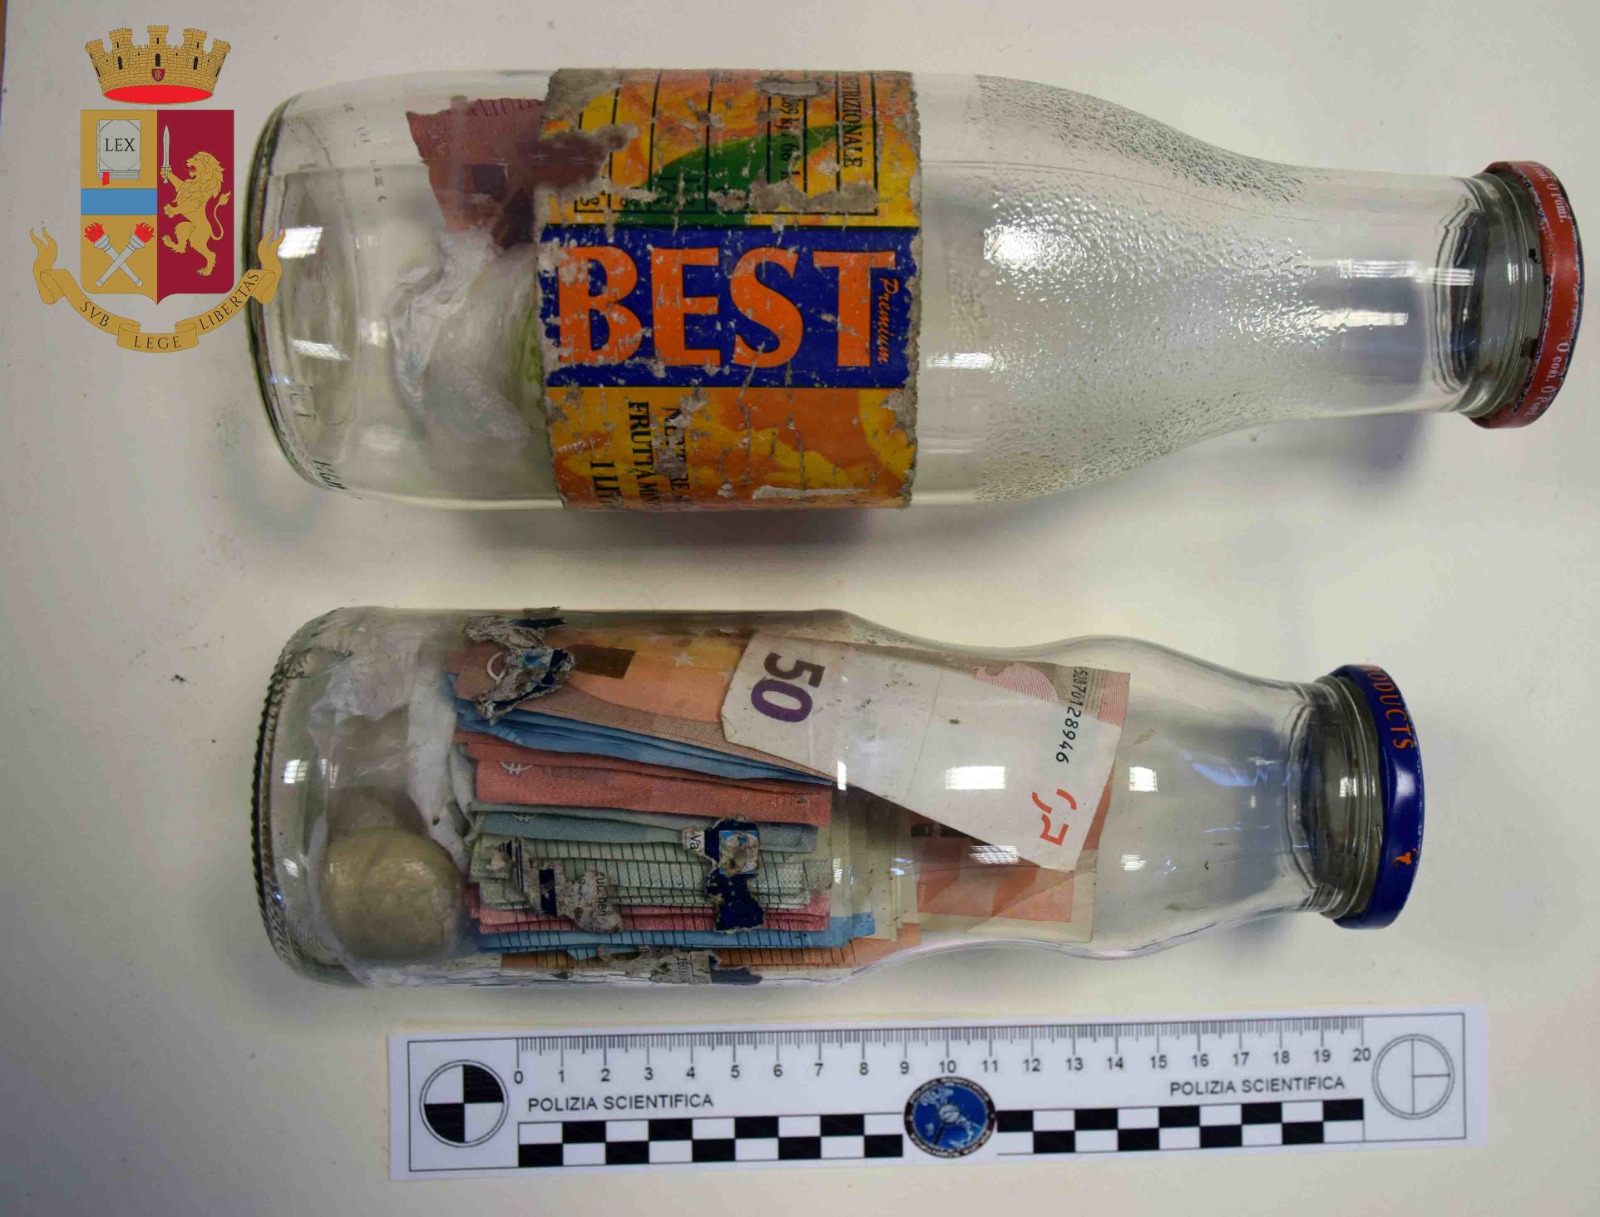 Porto Sant’Elpidio – Blitz nel casolare, Polizia trova droga e soldi in due bottiglie sotterrate